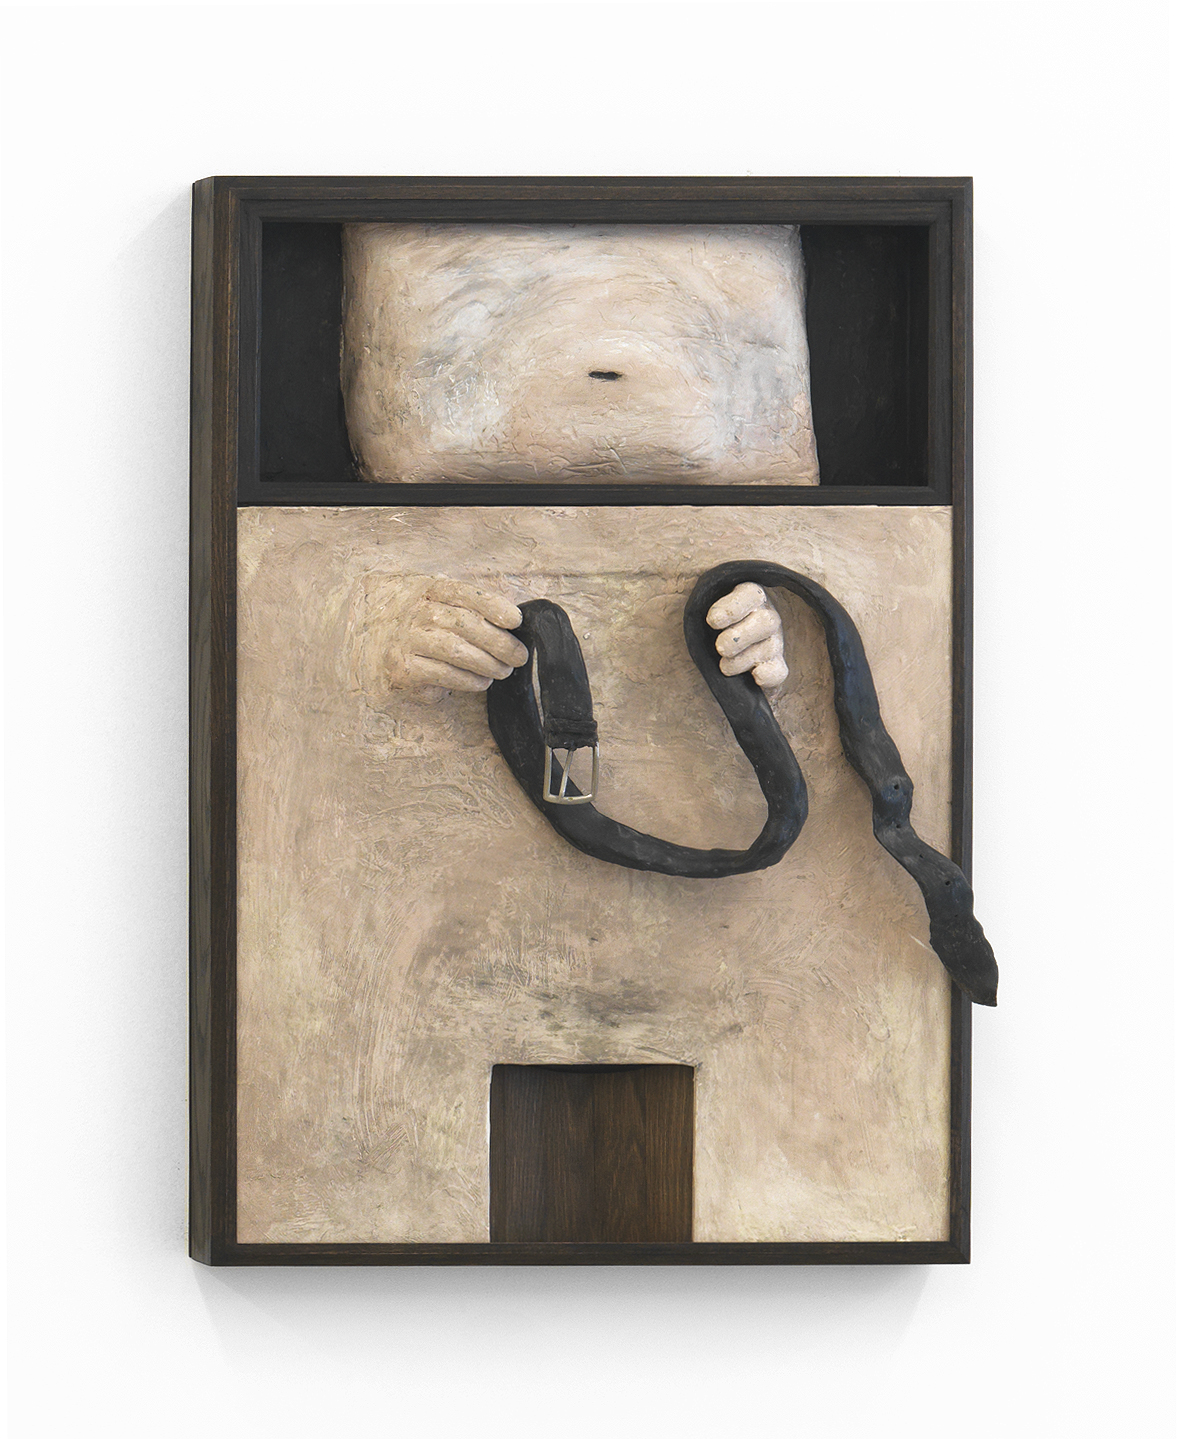 Dan Herschlein, A Belt in Near Dark, 2016, wood, plaster, casein paint, joint compound, wax and belt buckle, 33h x 23w x 7.5d in.